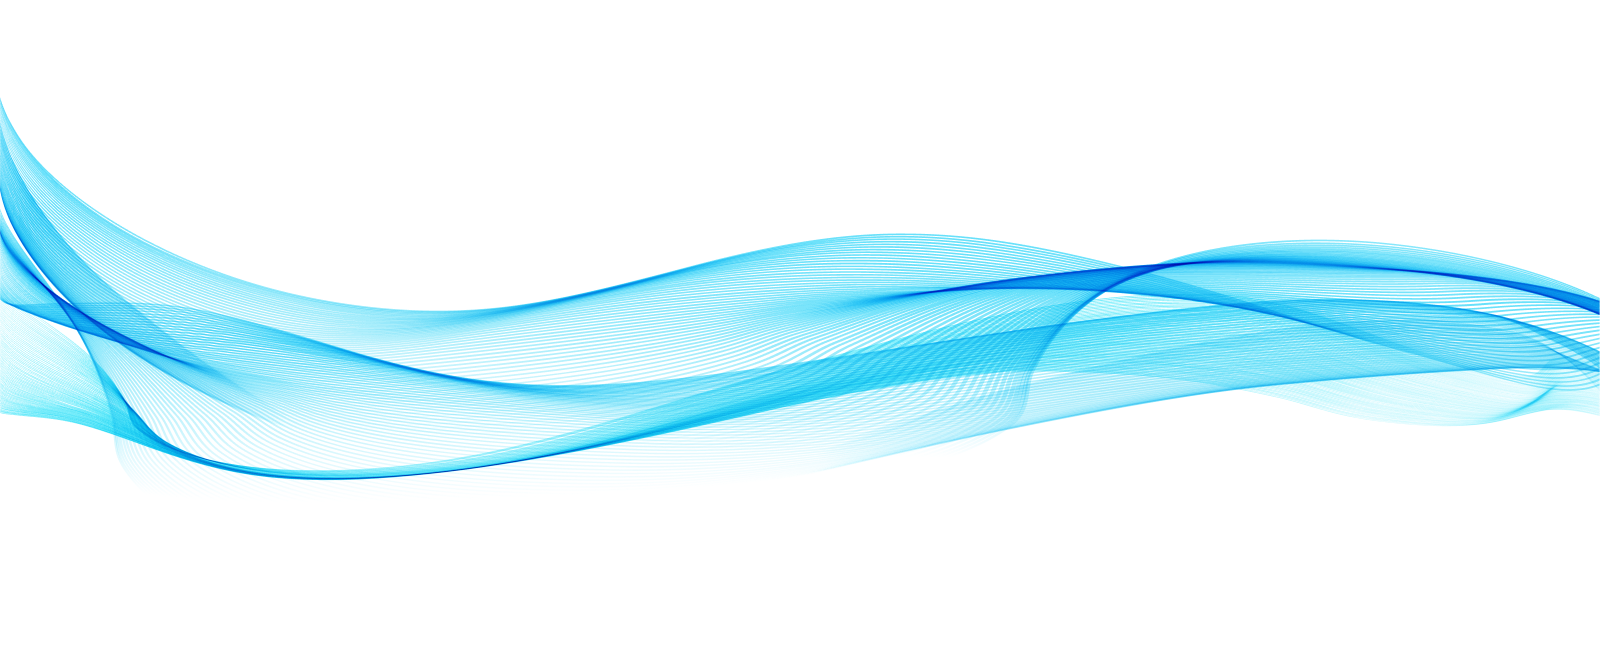 Blue wave shaped background image